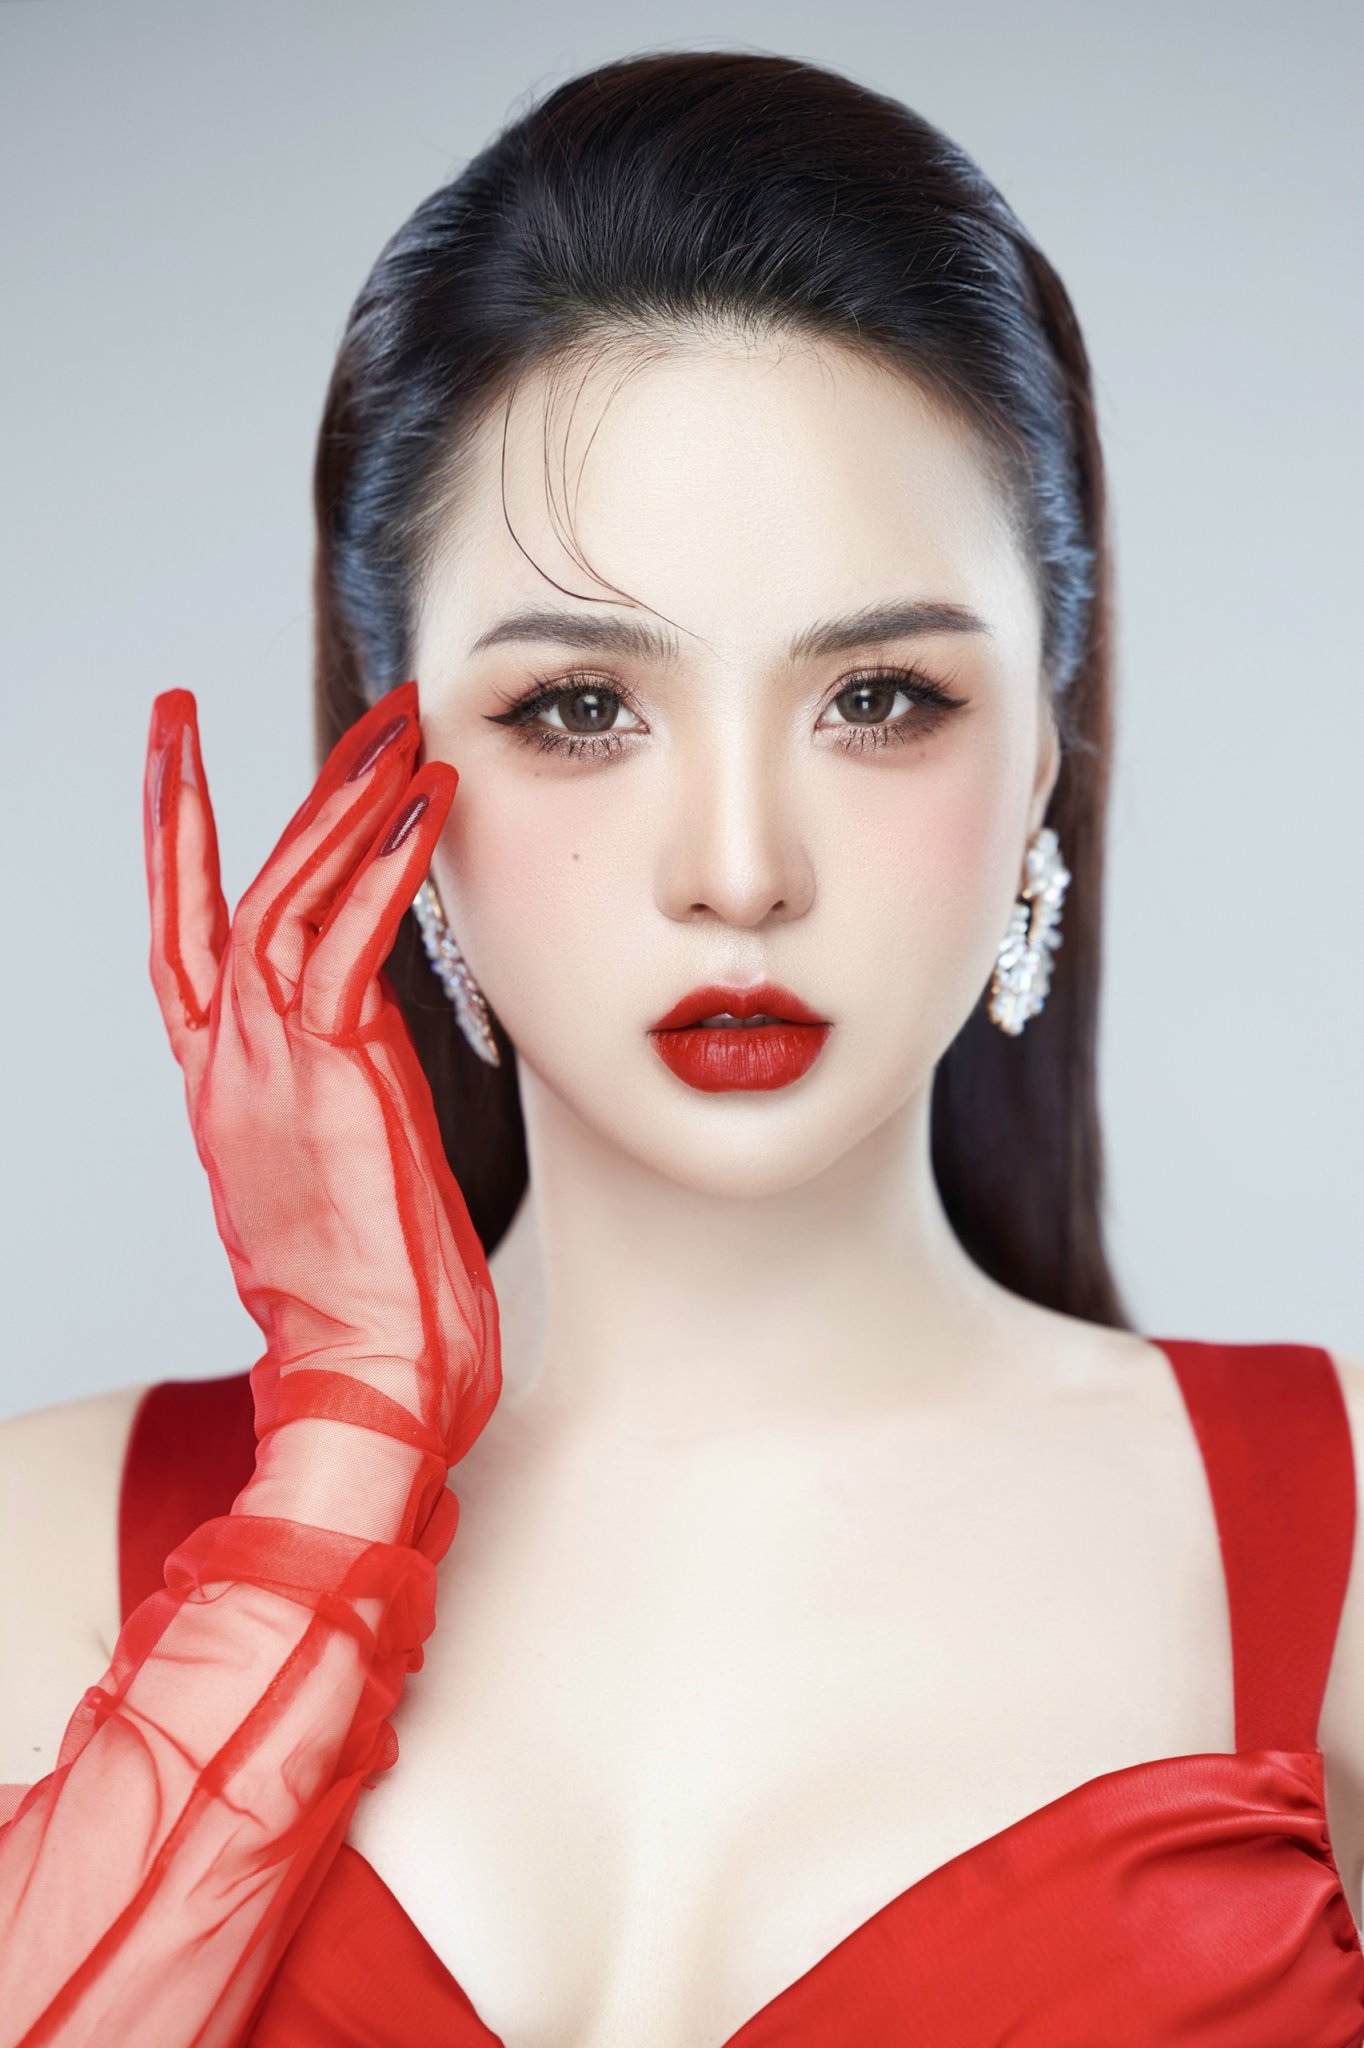 Hằng Nga Nguyễn - Bản lĩnh và sắc đẹp góp phần làm nên thương hiệu mỹ phẩm Hàn Quốc Hemia - 2